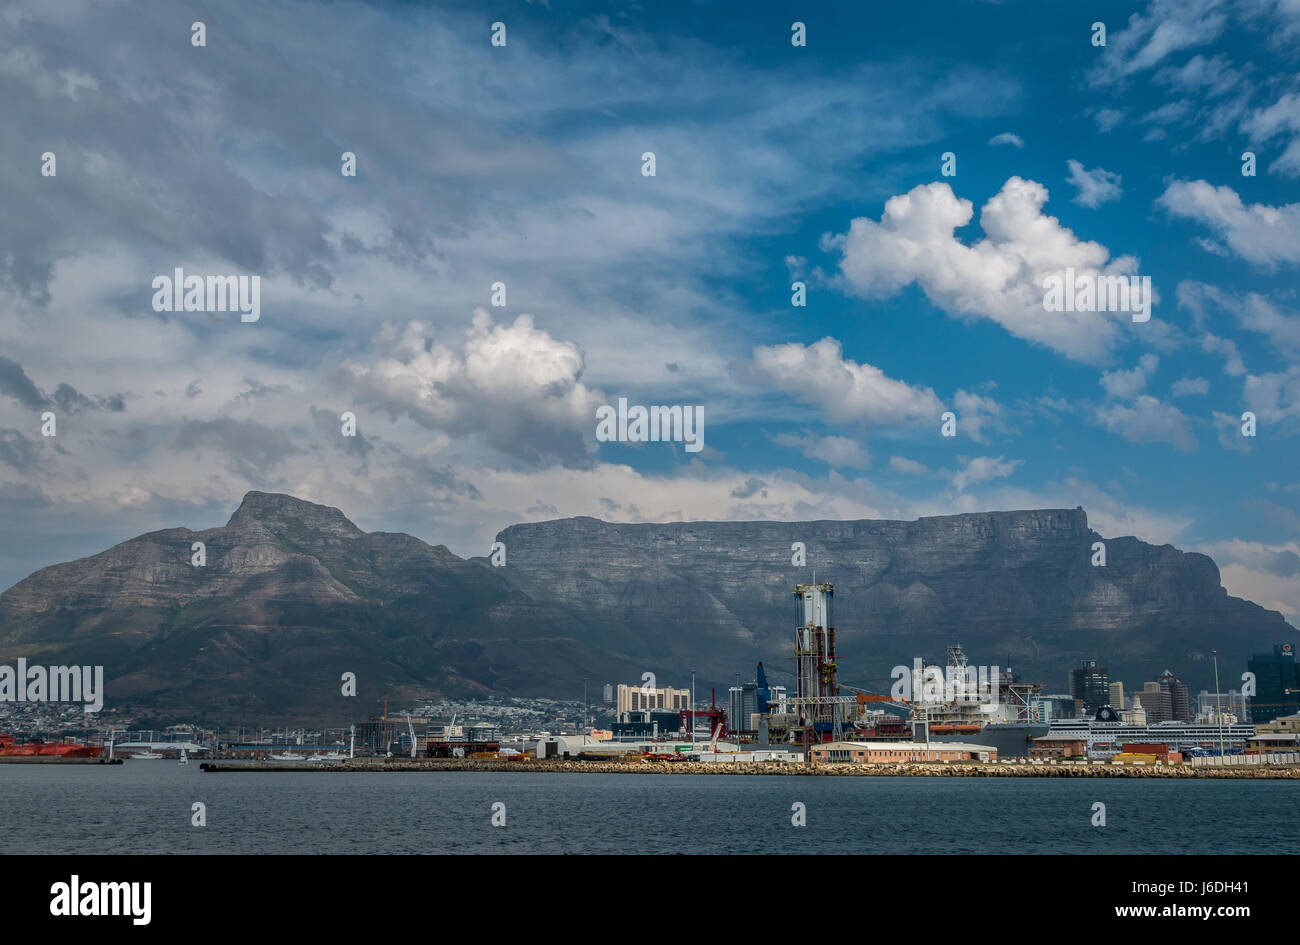 Tafelberg Umriss mit Cape Town Hafen am Horizont mit dramatischen Wolkenformationen am Himmel, Südafrika Stockfoto